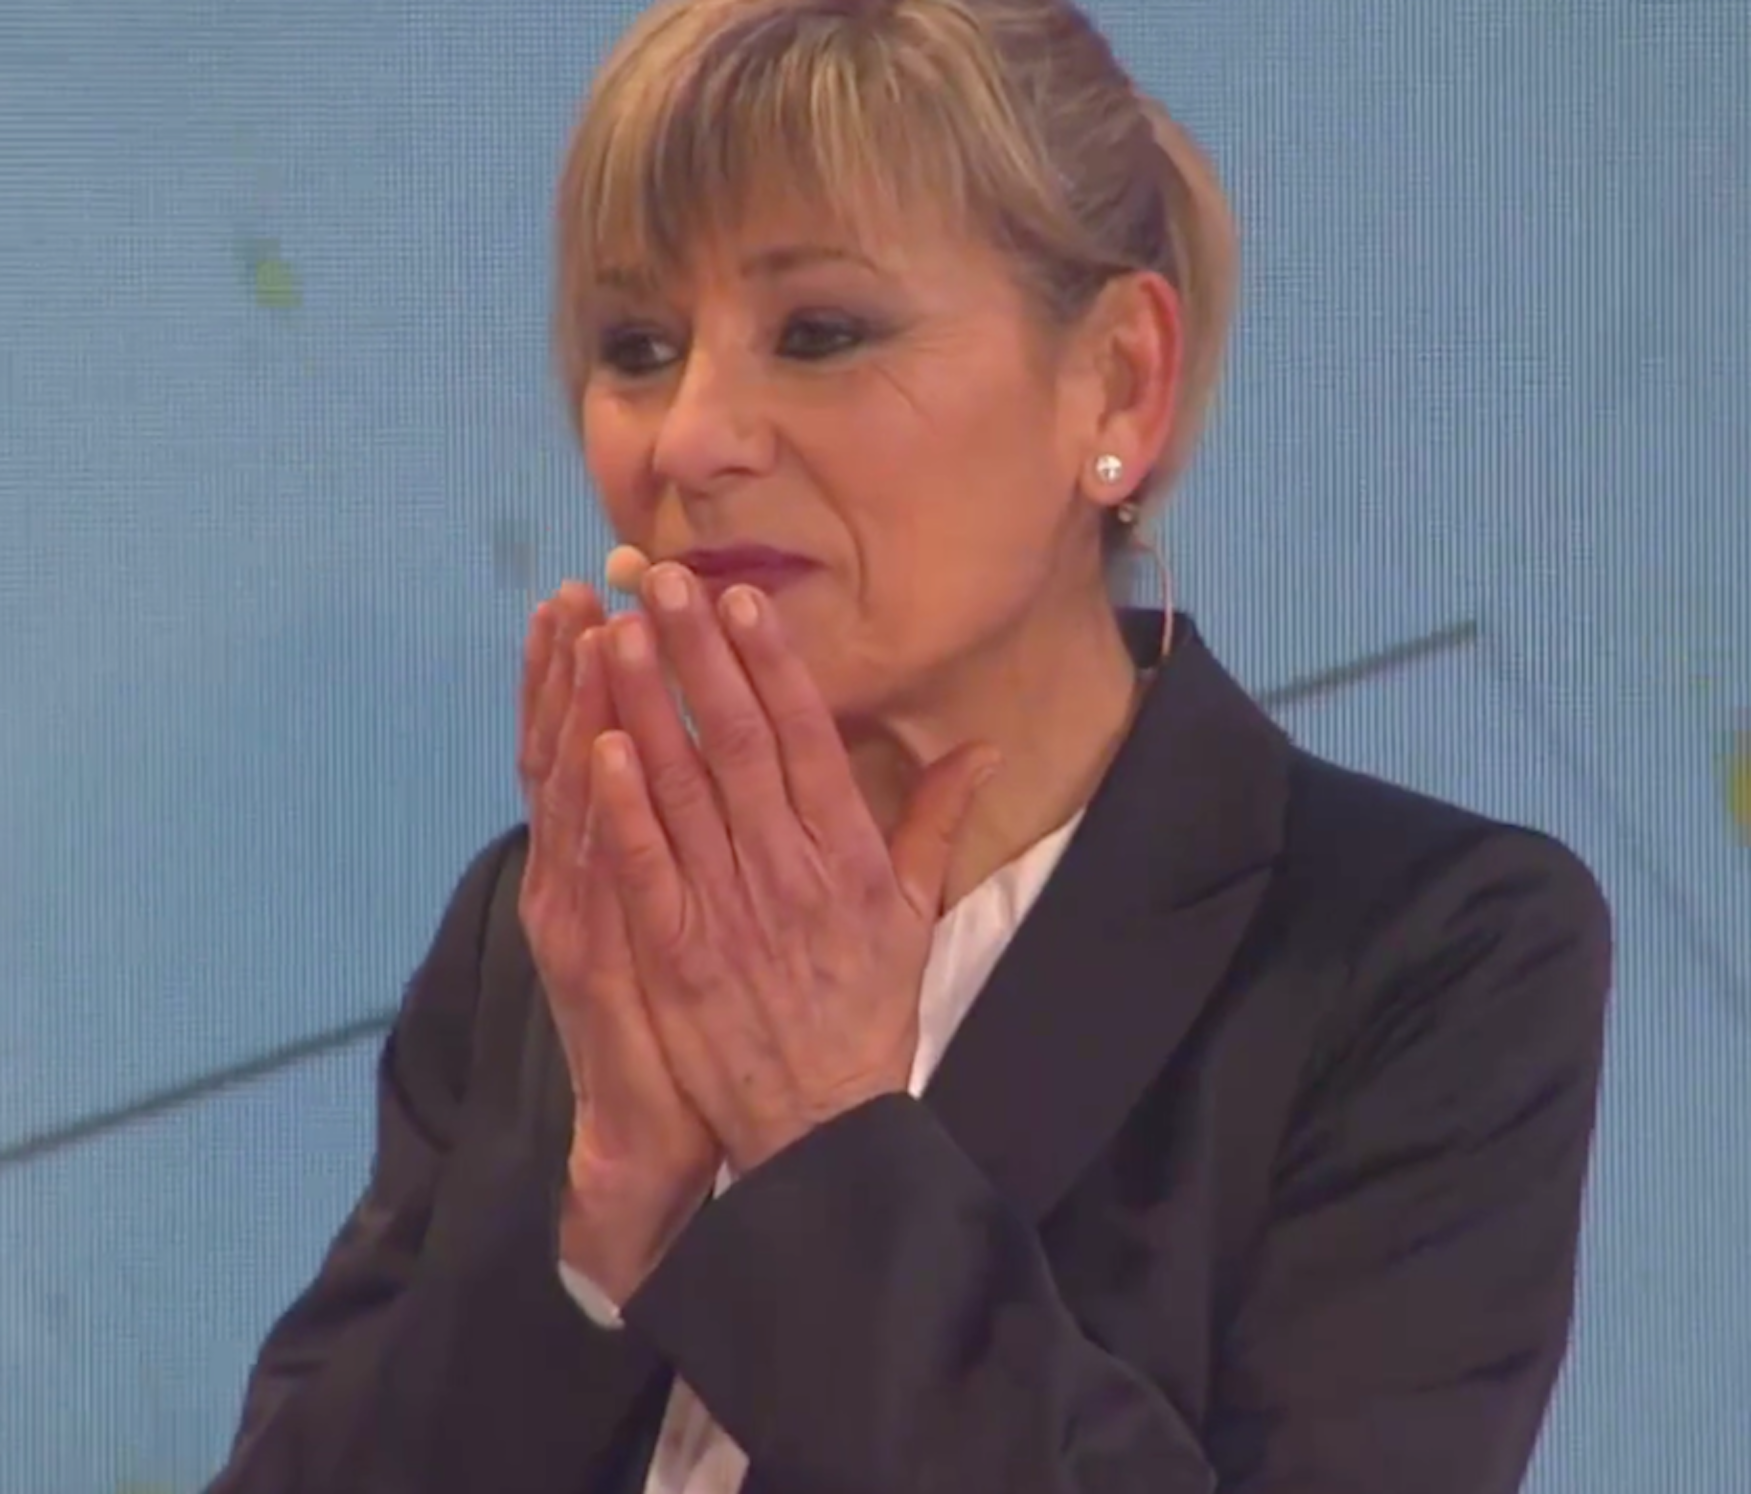 Espectacular Mari Pau Huguet a los 57, se emociona en TV3 recordando su infancia